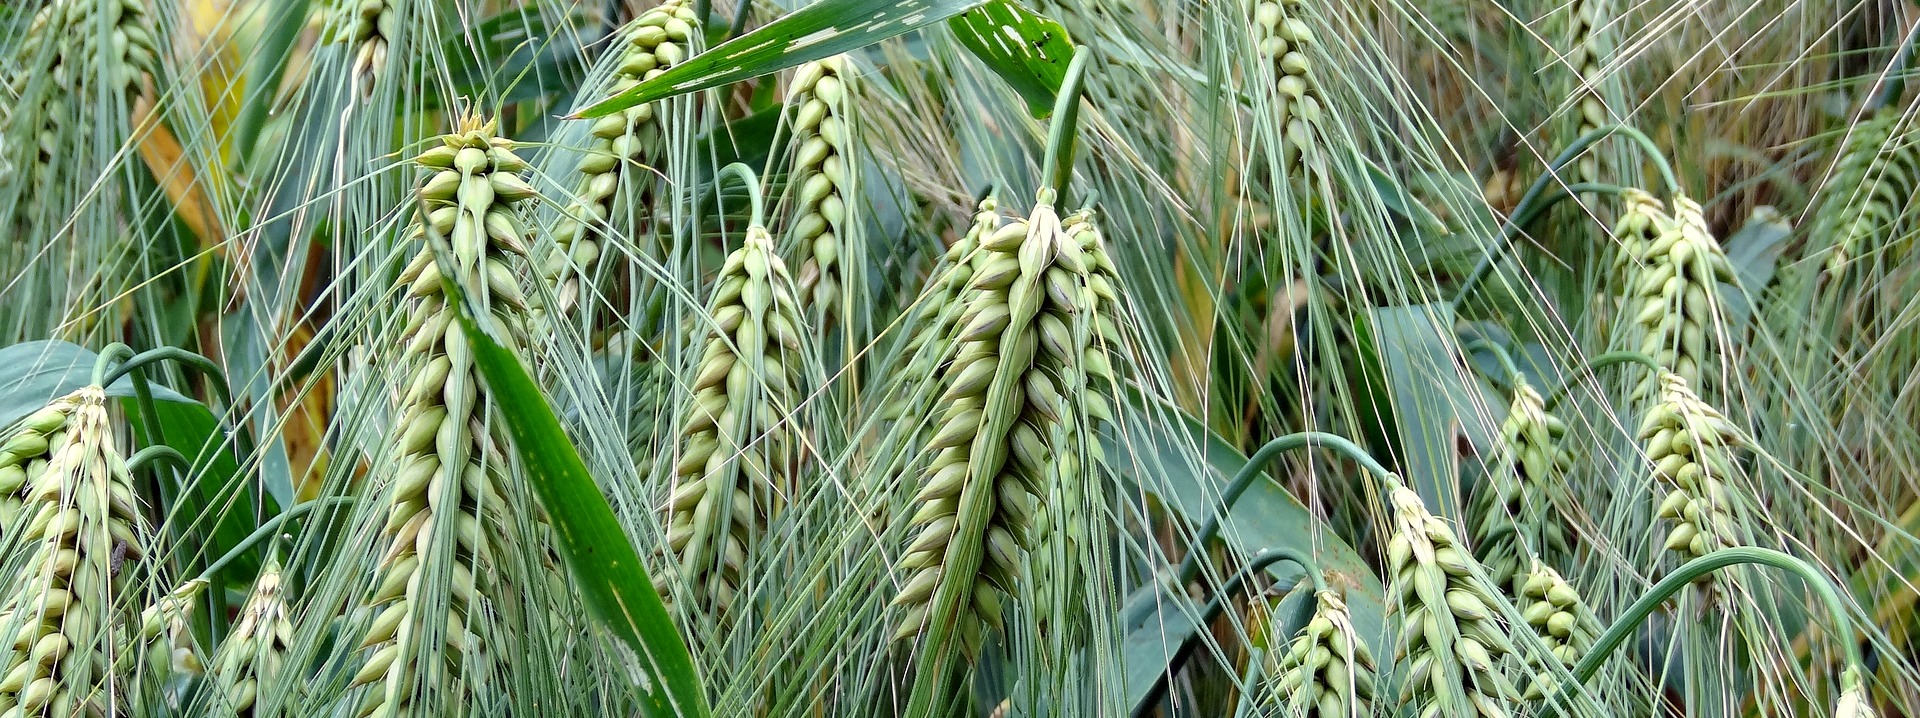 K-Adriatica stima a un +20% le semine di cereali in Italia. Ma la produzione agricola teme la crisi dei fertilizzanti